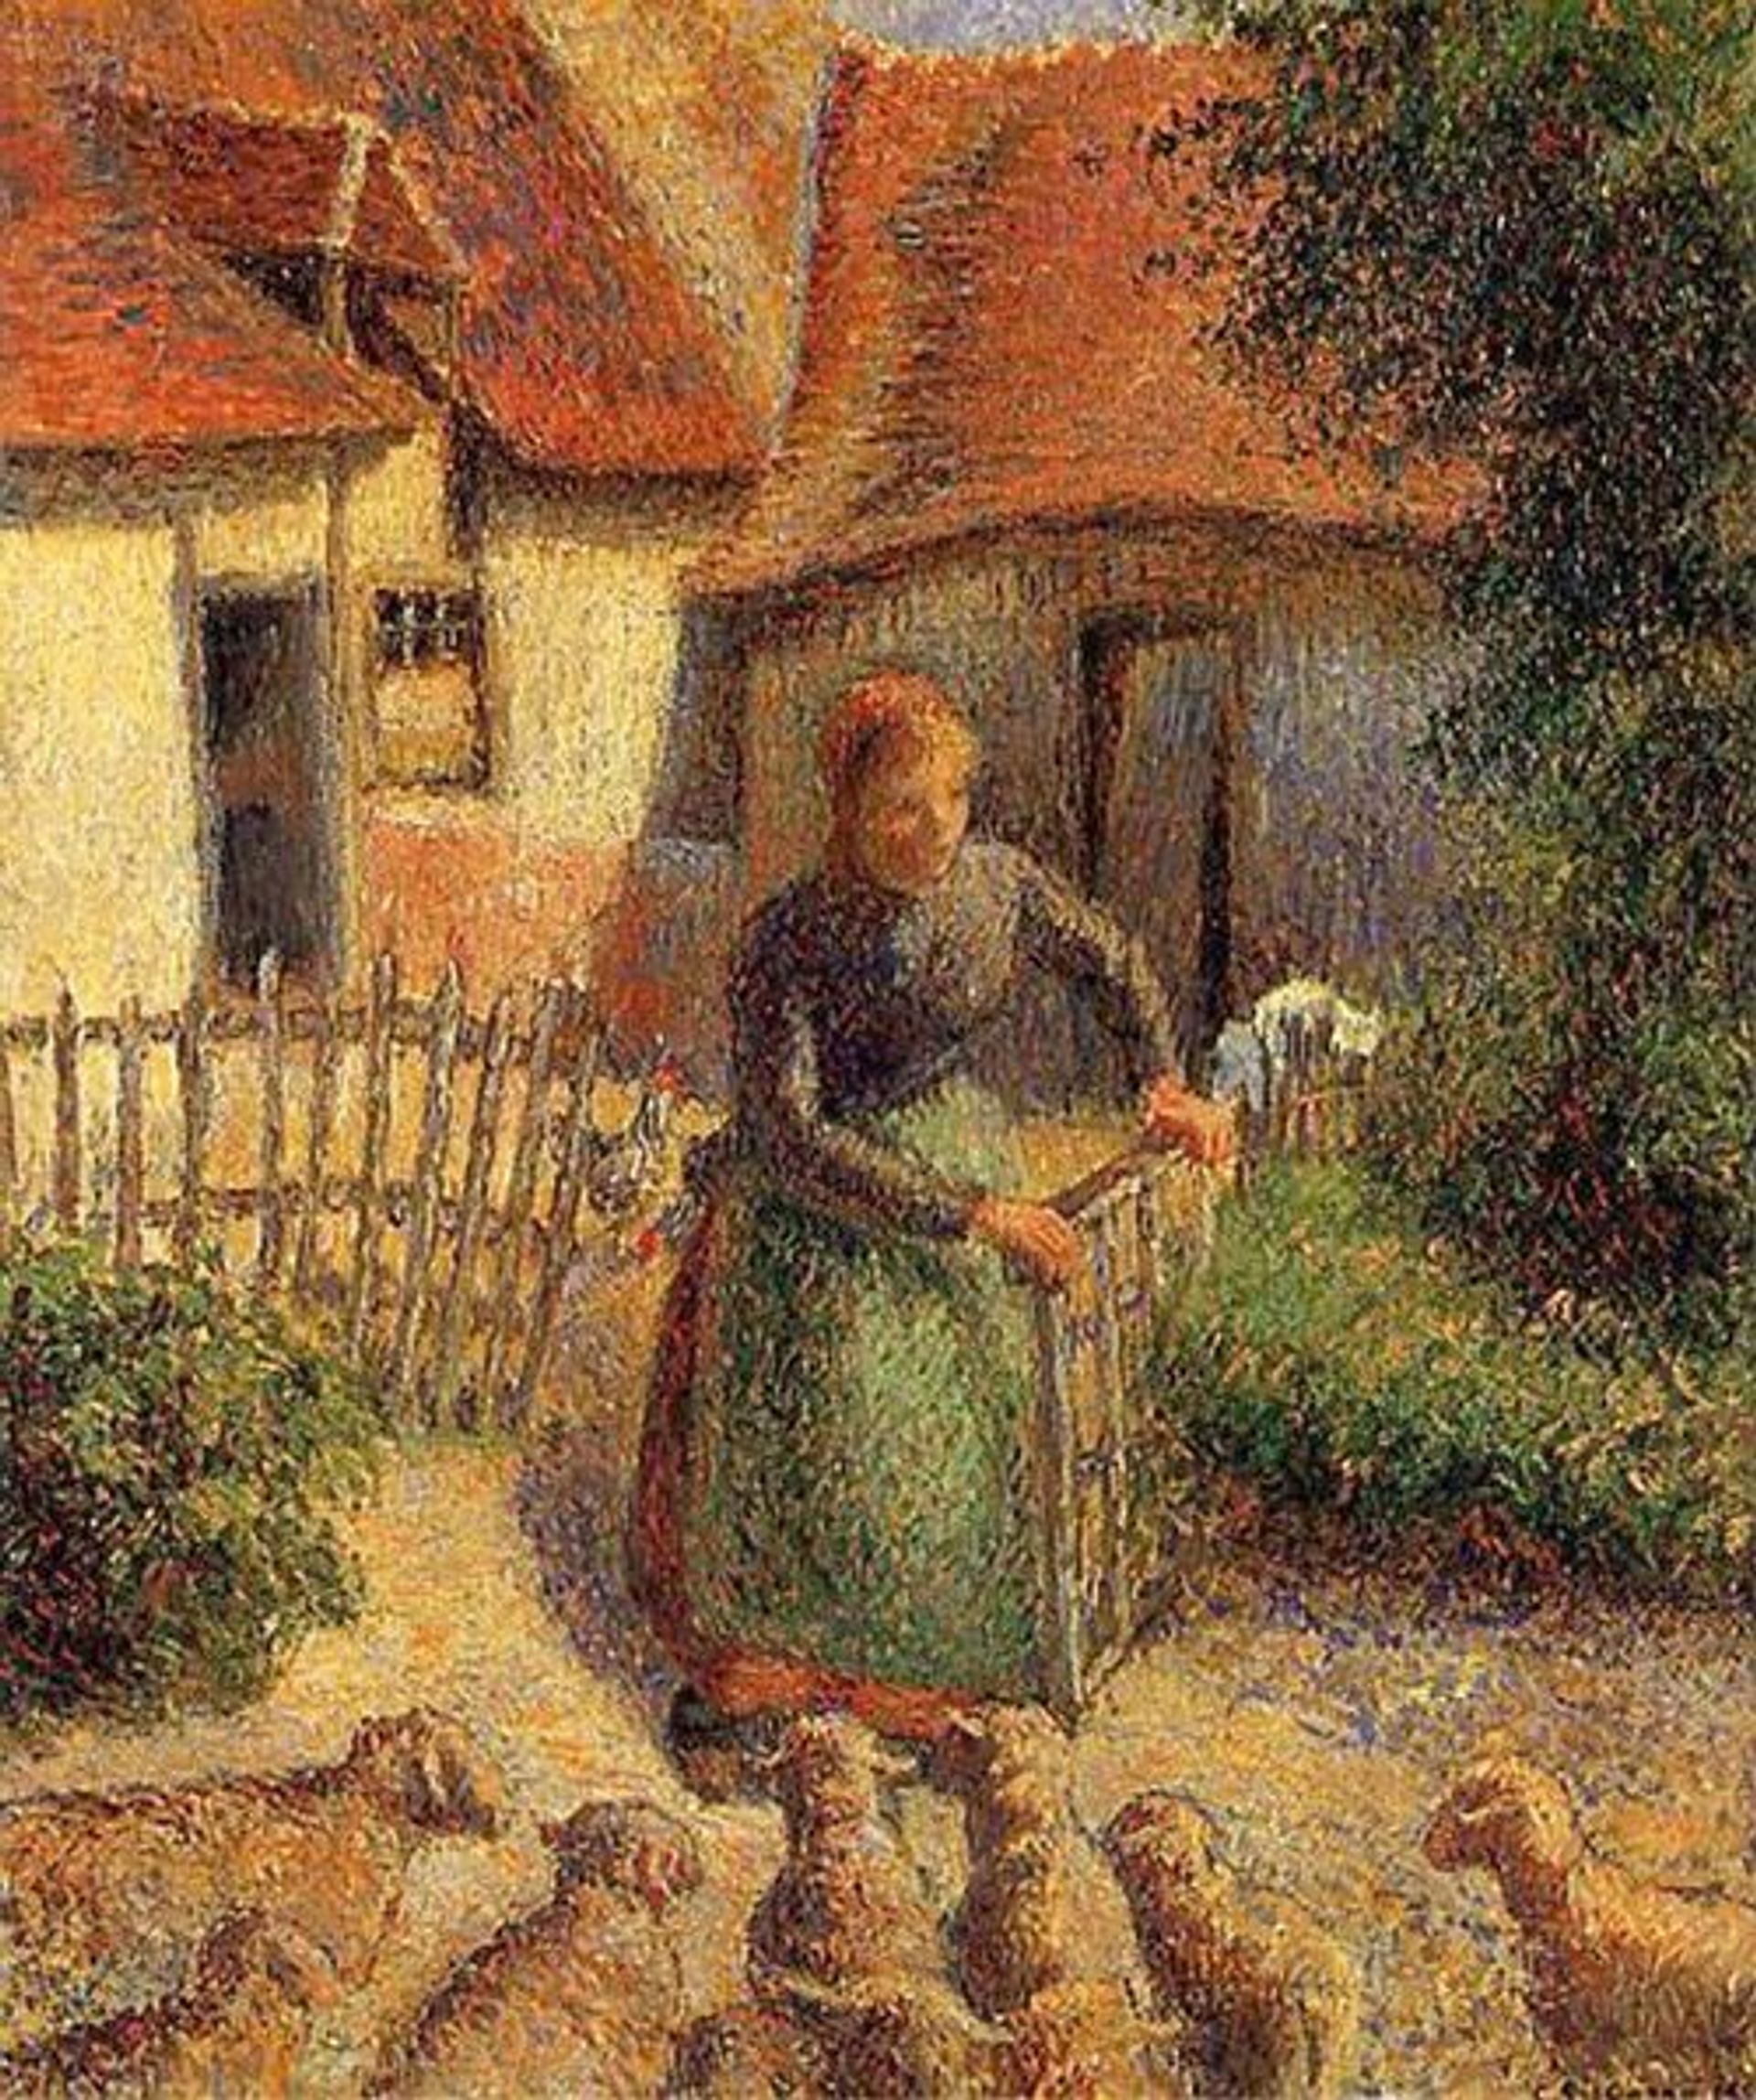 Camille Pissarro, La Bergère rentrant des moutons, 1886, huile sur toile, 46 x 38 cm. © D.R.